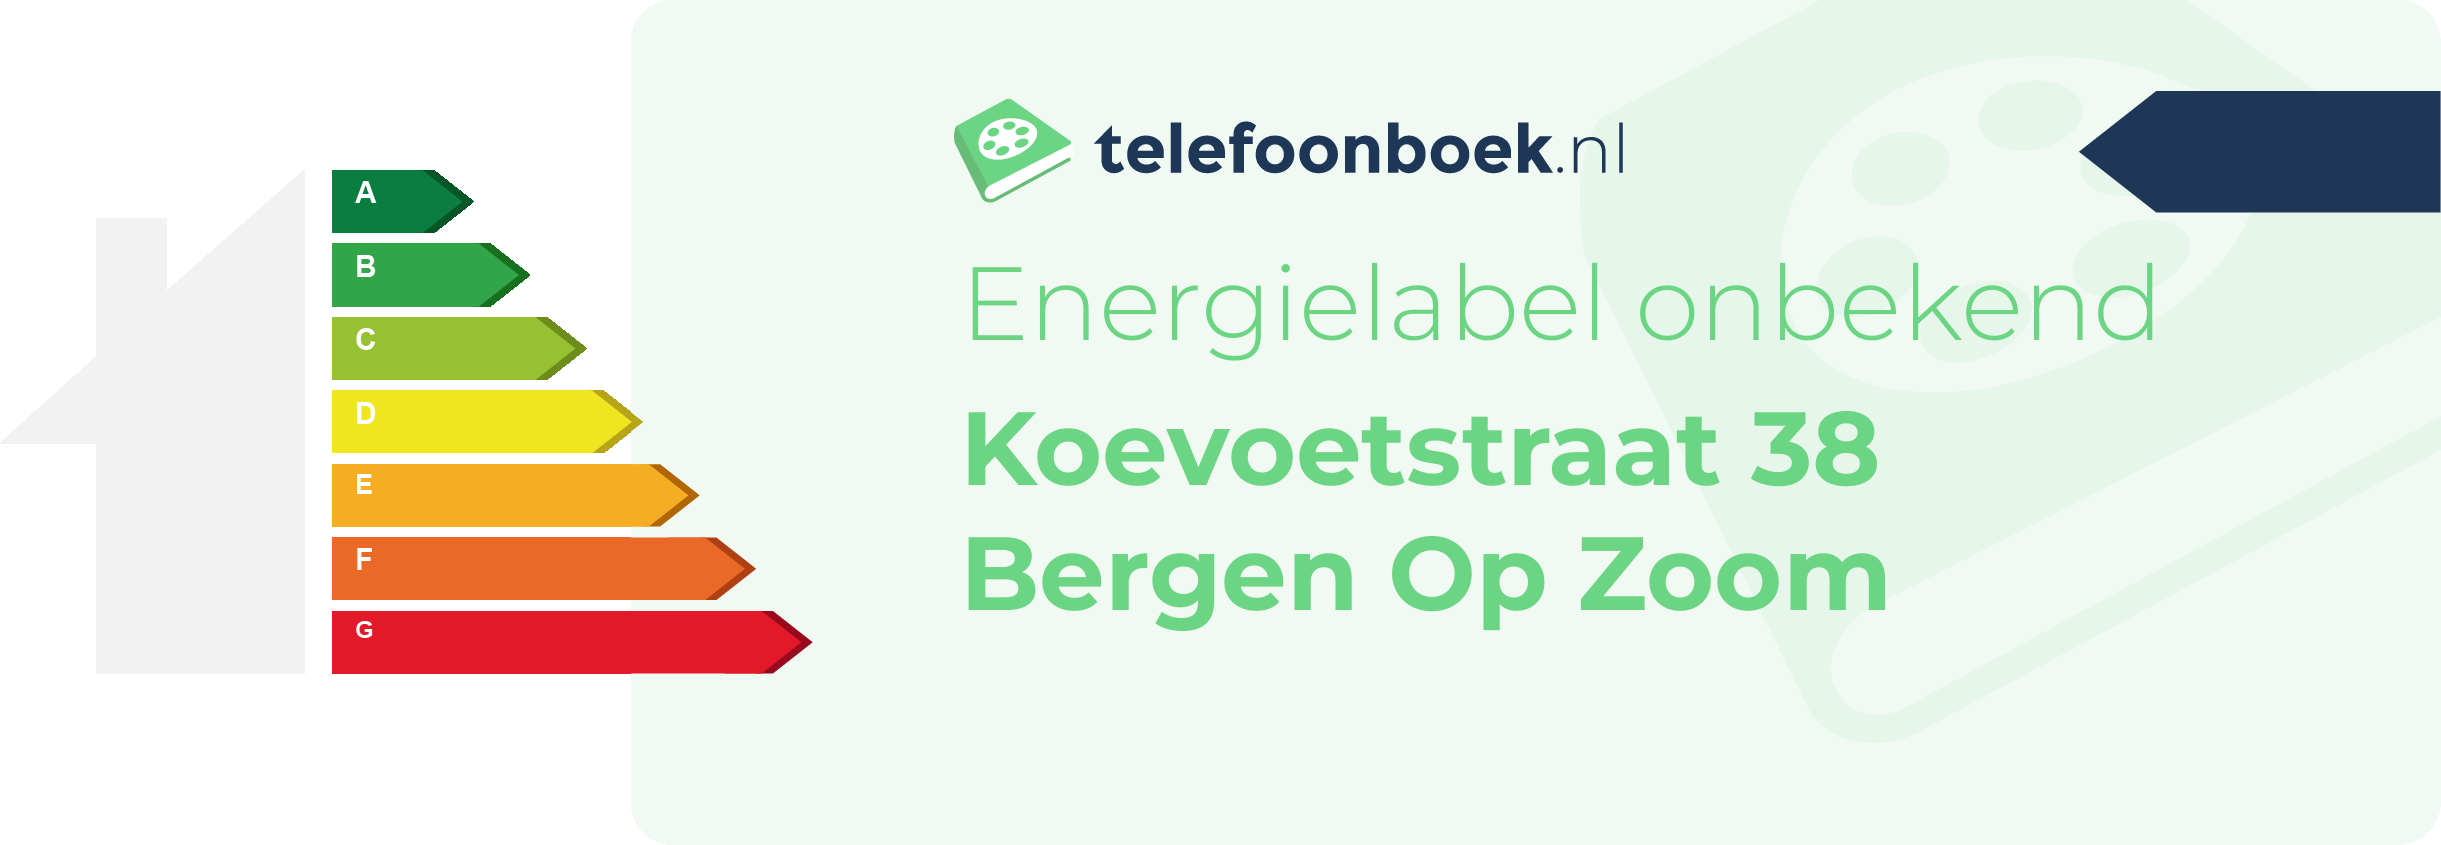 Energielabel Koevoetstraat 38 Bergen Op Zoom